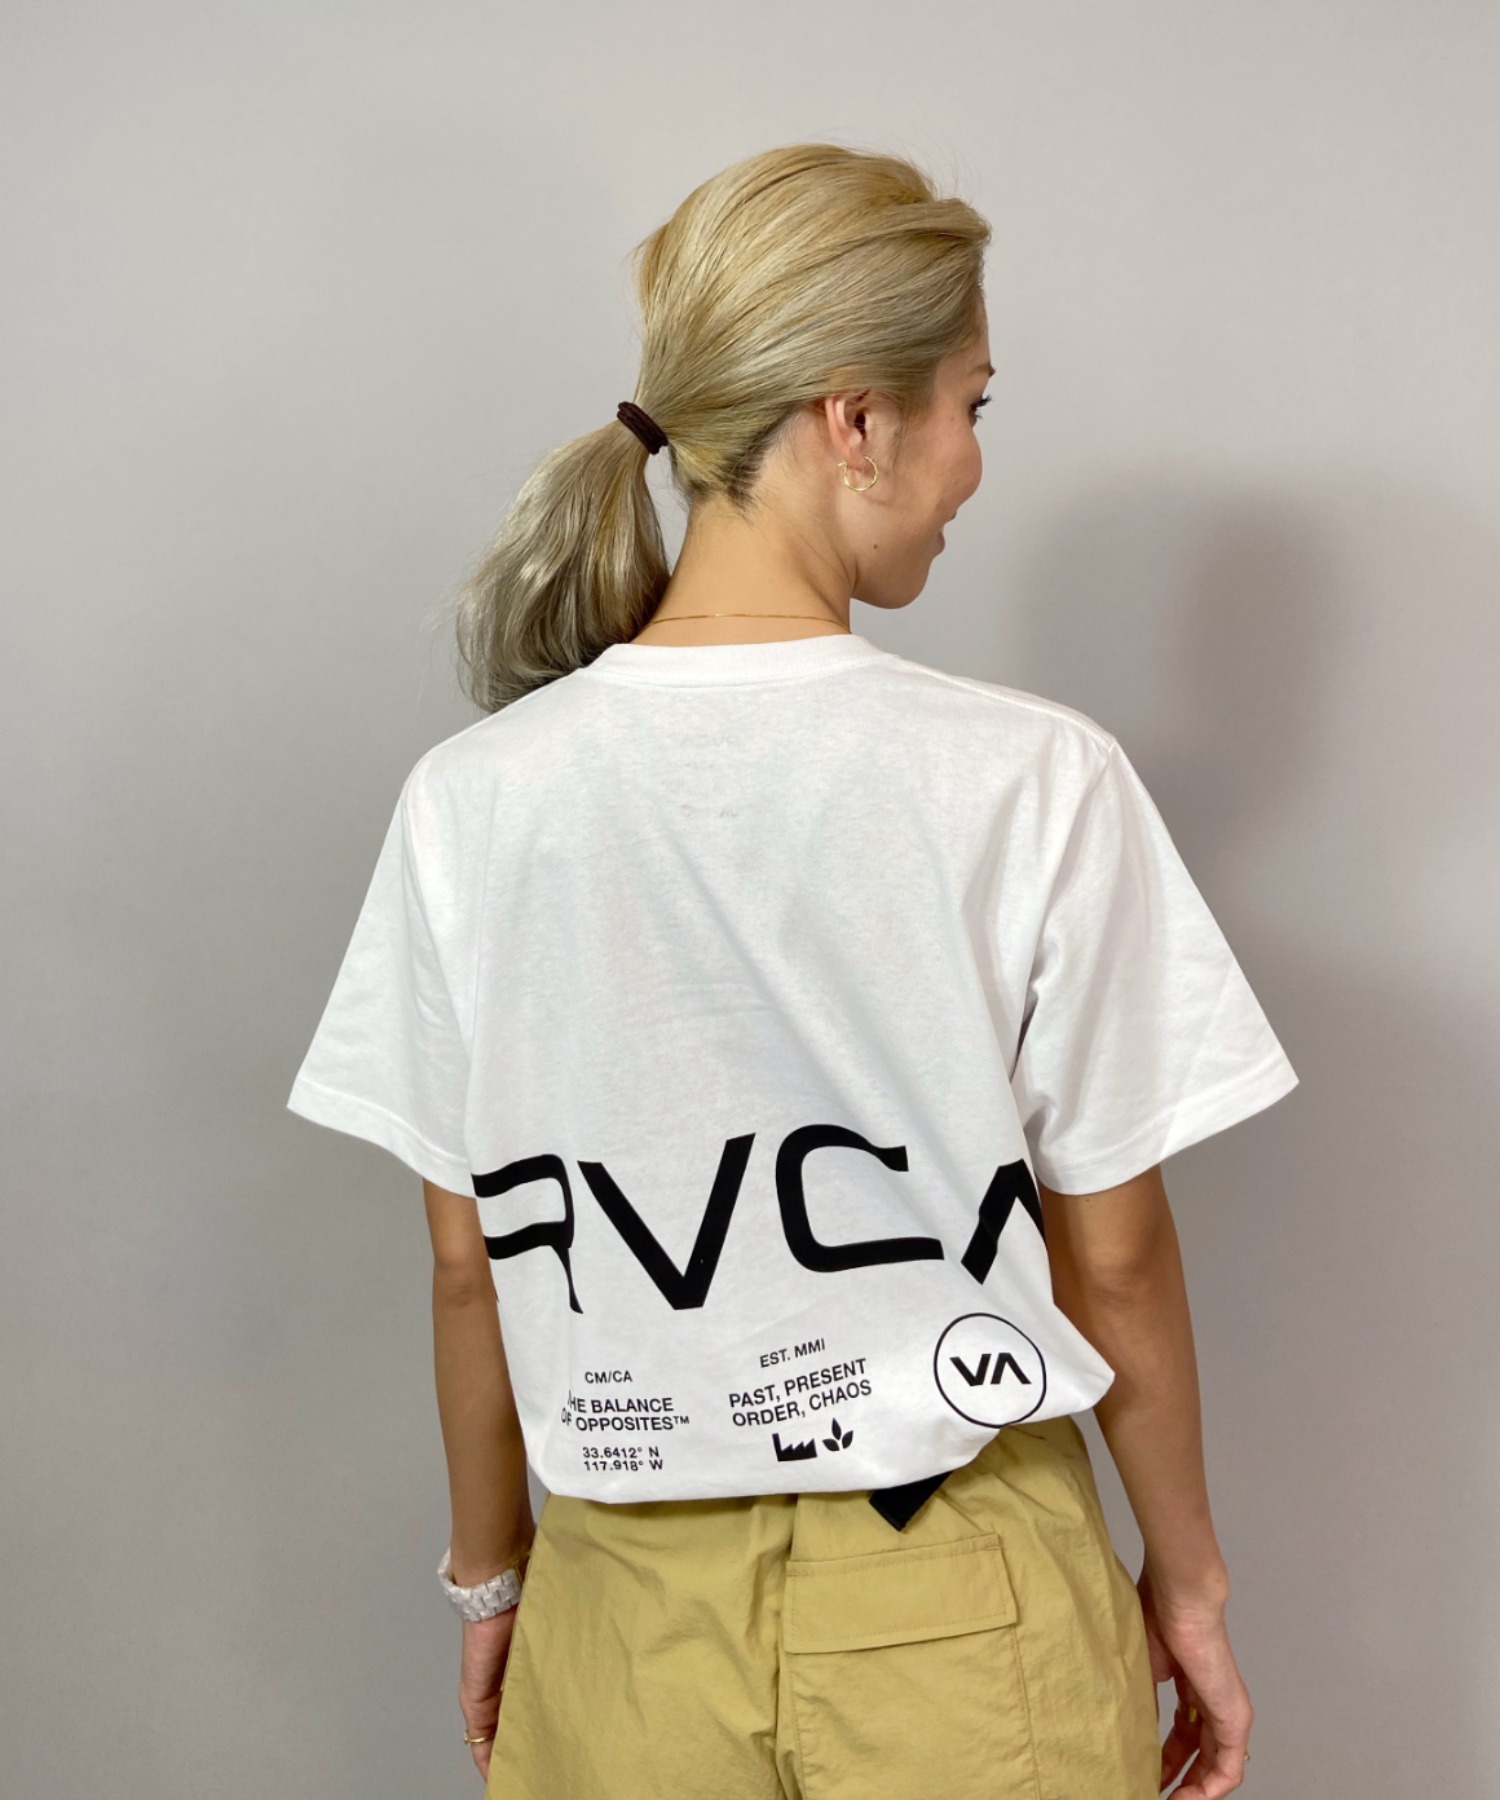 超特価激安 RVCARVCA ルーカ ルーズシルエット BB043-240 春先取りの バックプリントロゴTシャツ